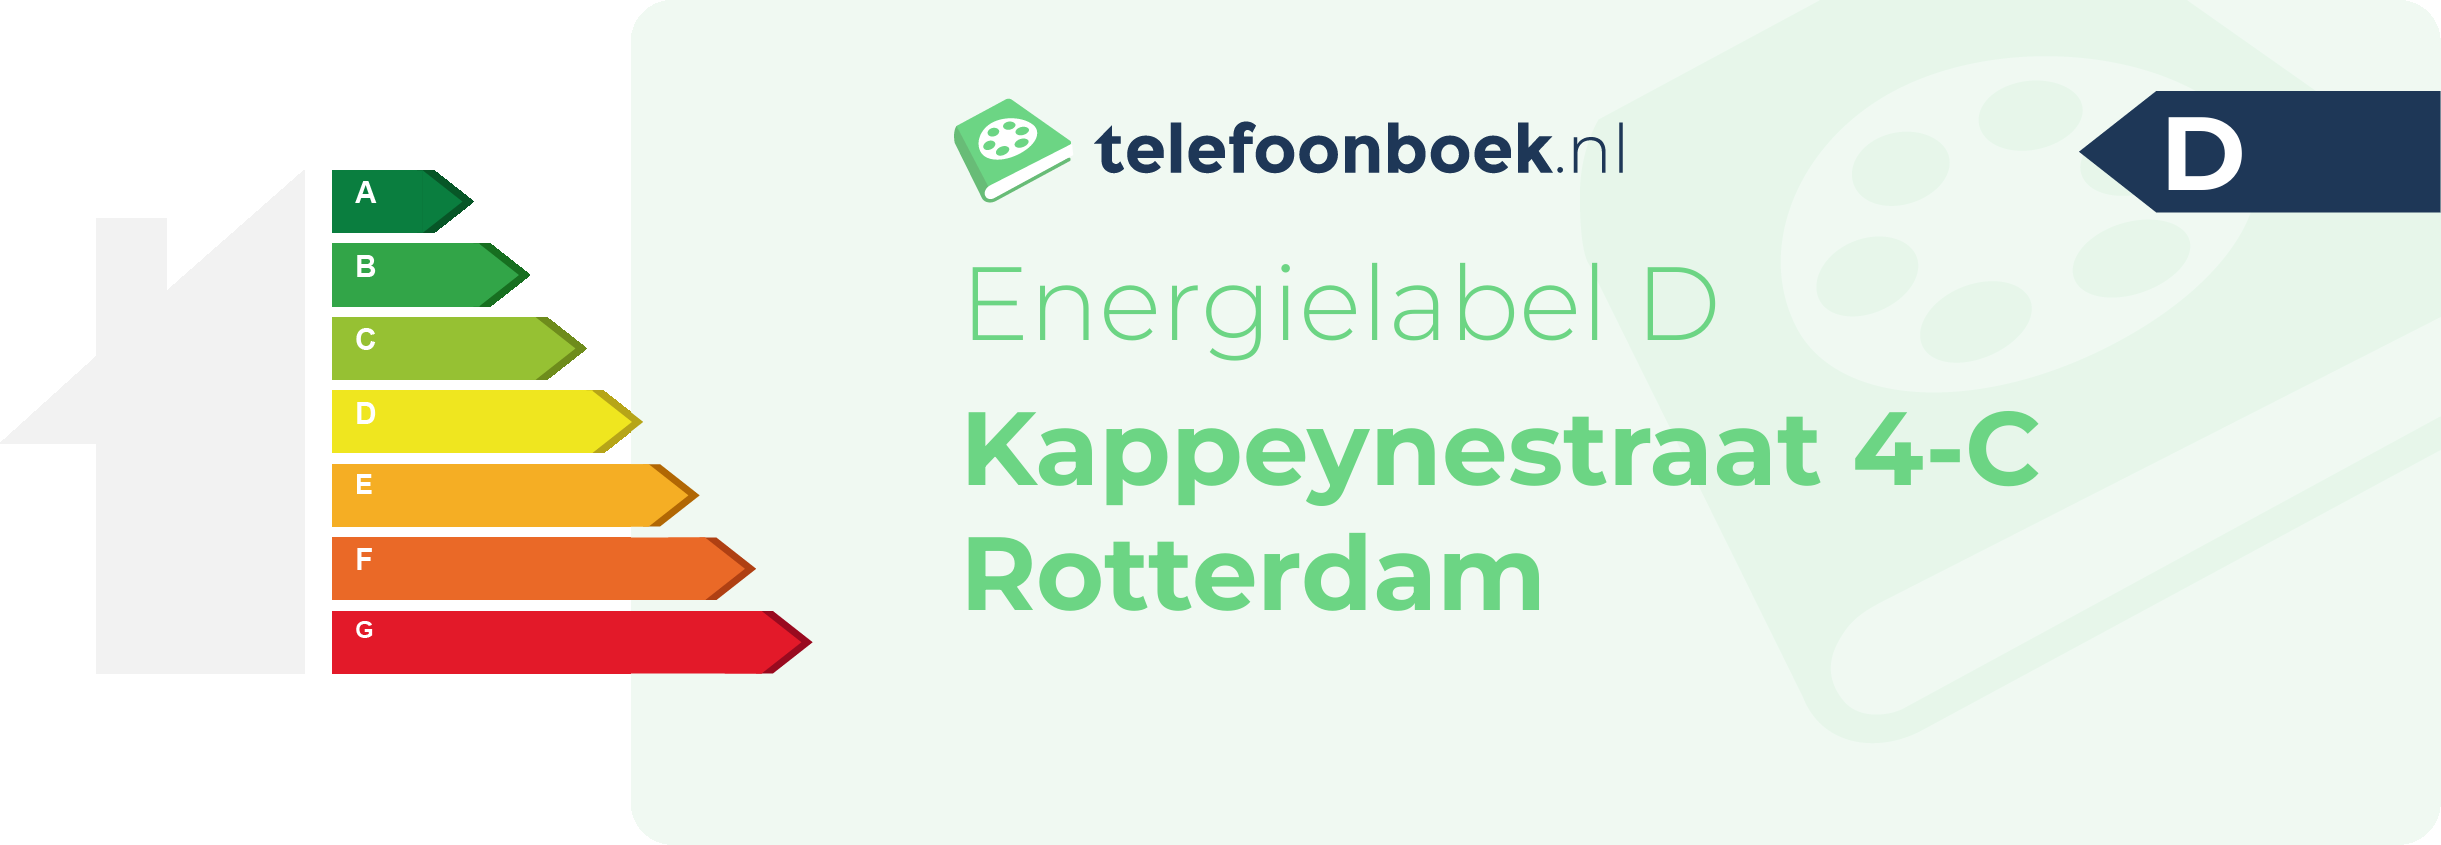 Energielabel Kappeynestraat 4-C Rotterdam